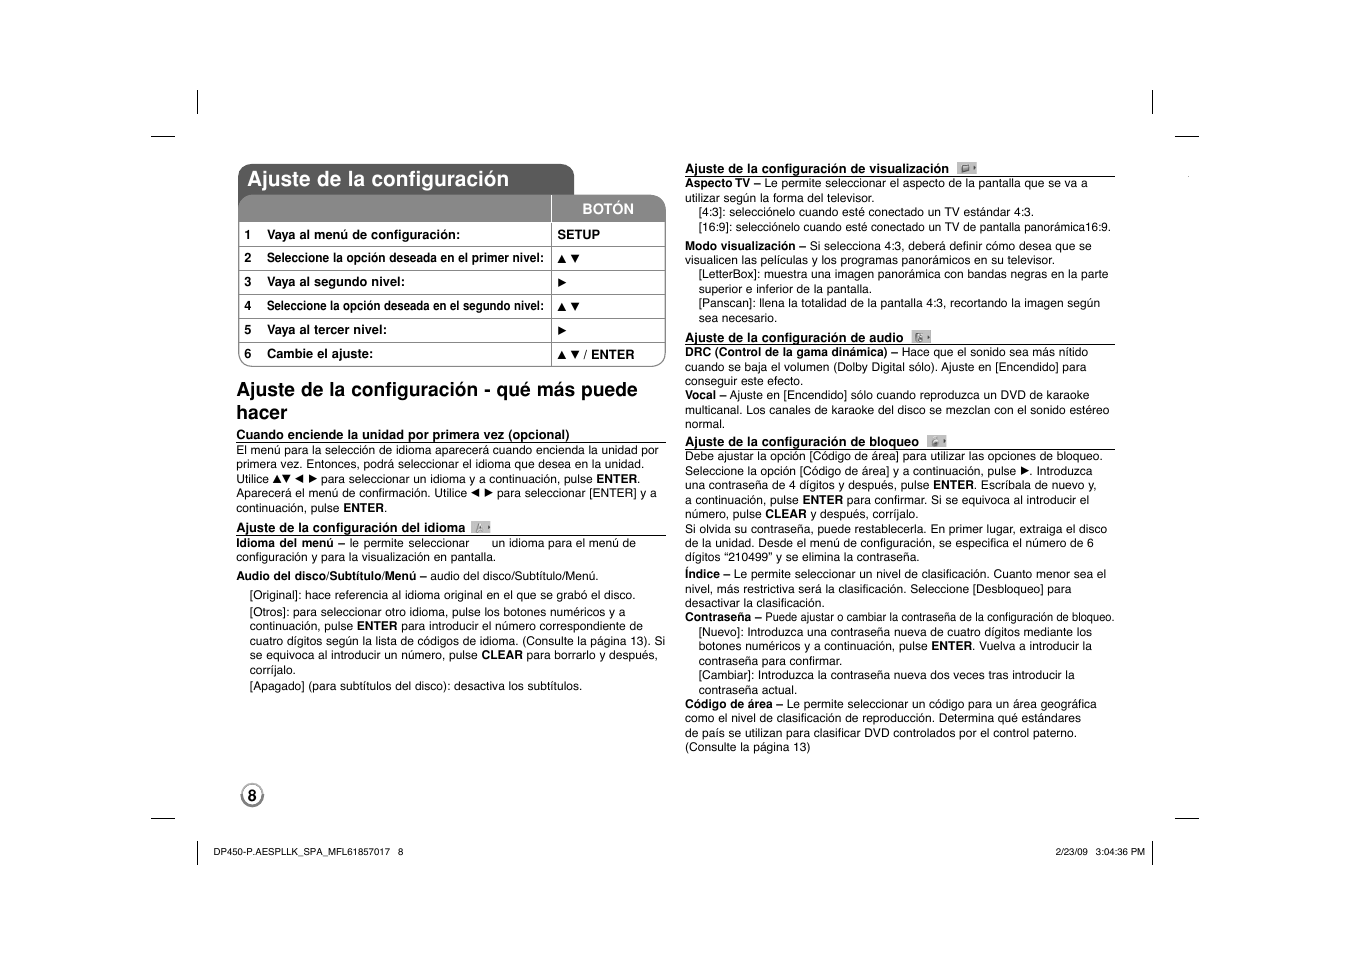 Ajuste de la configuración, Ajuste de la configuración - qué más puede hacer | LG DP450 User Manual | Page 22 / 70